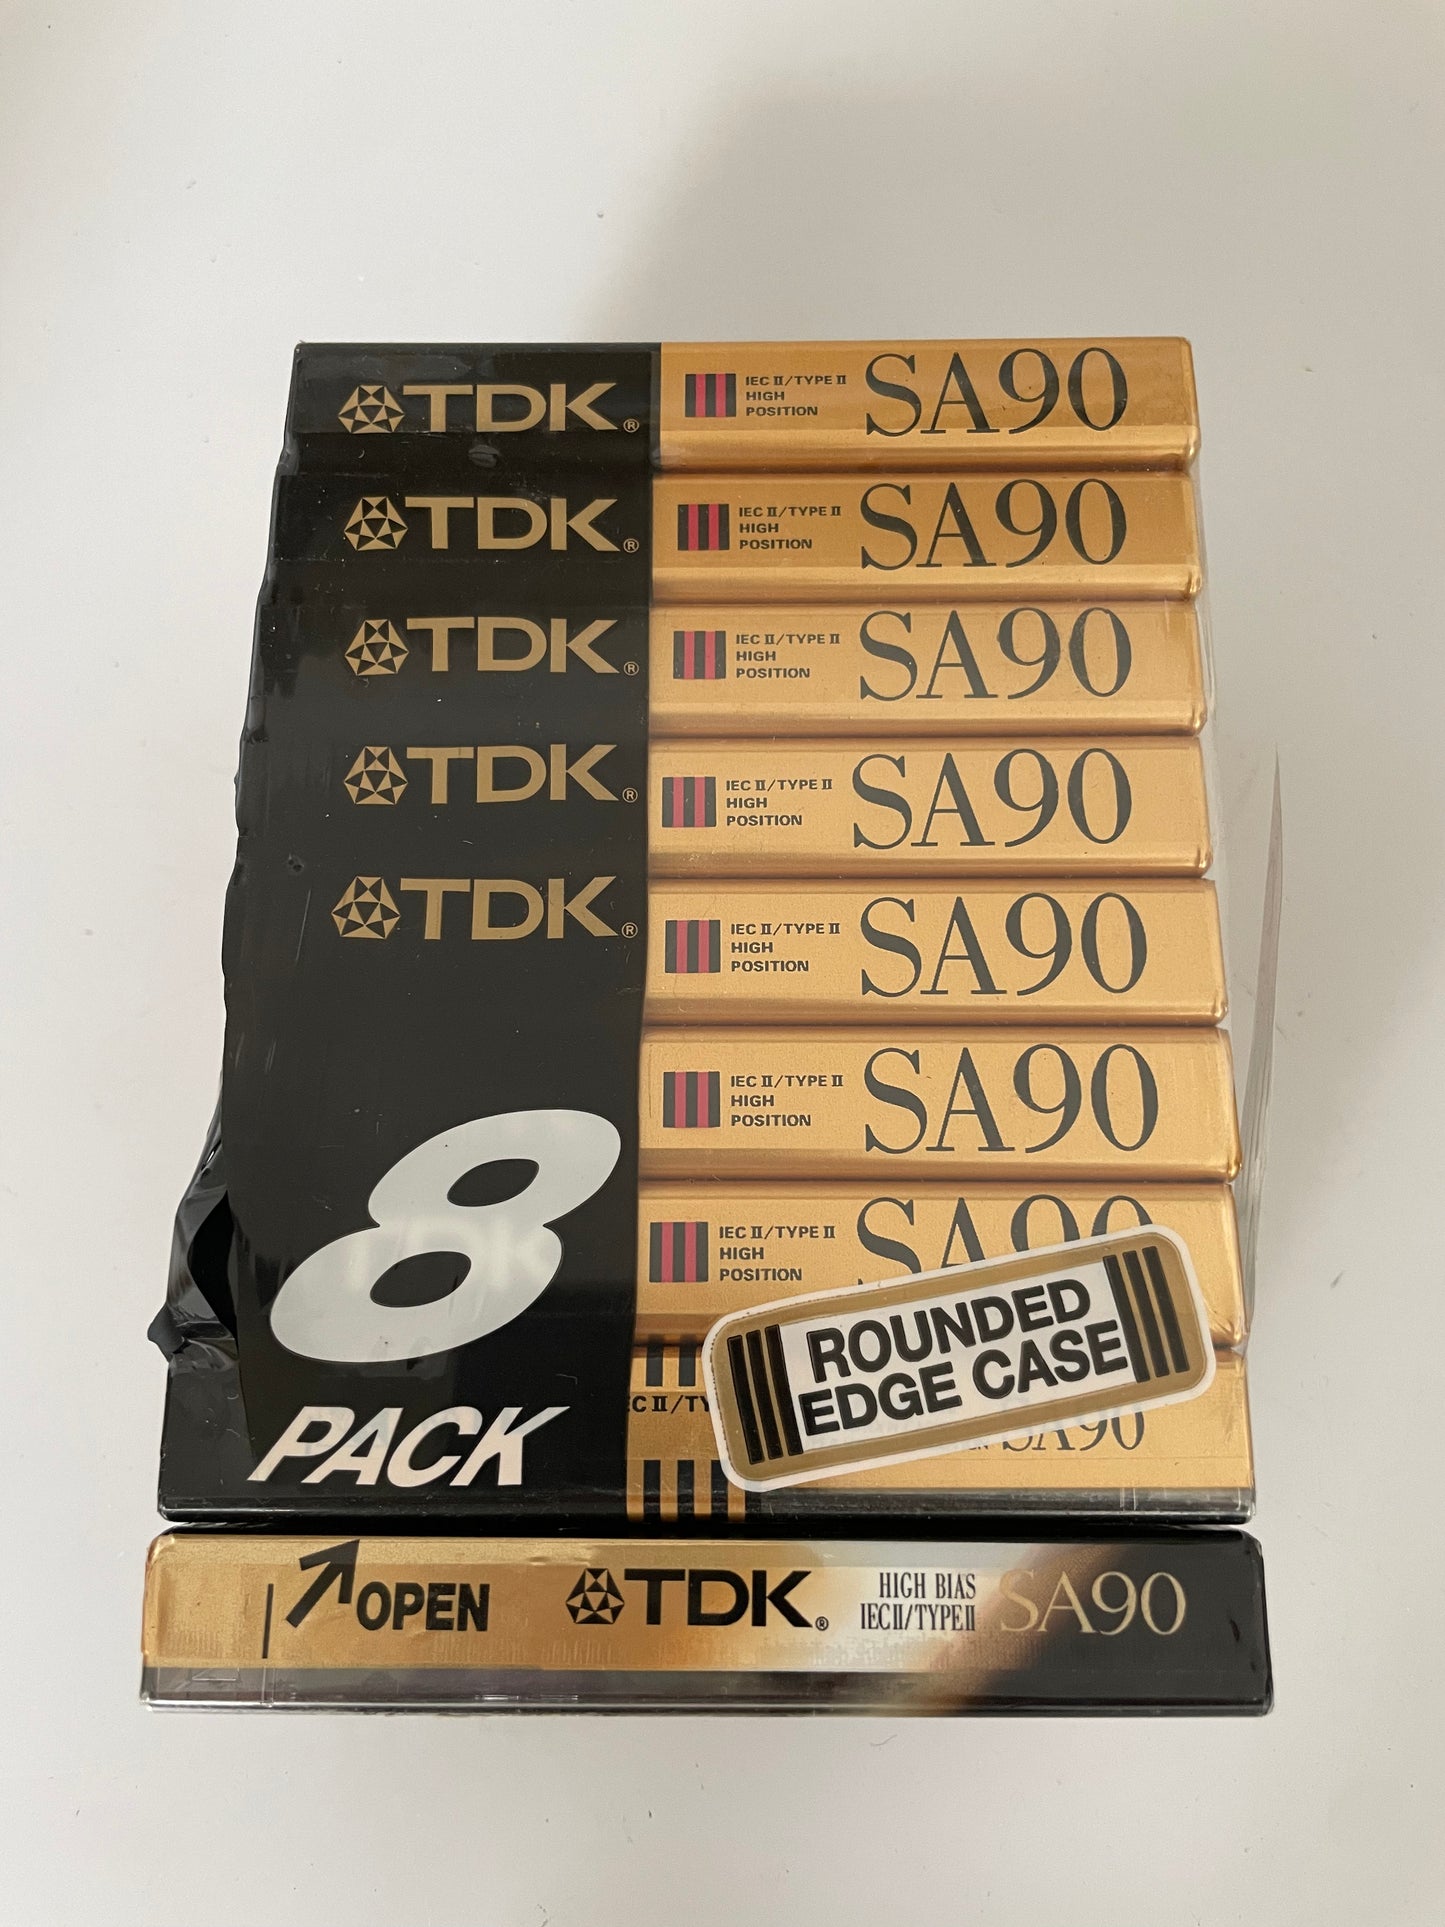 TDK SP90 High Position Type II/IEC II Cassette "Sealed" lot of 9